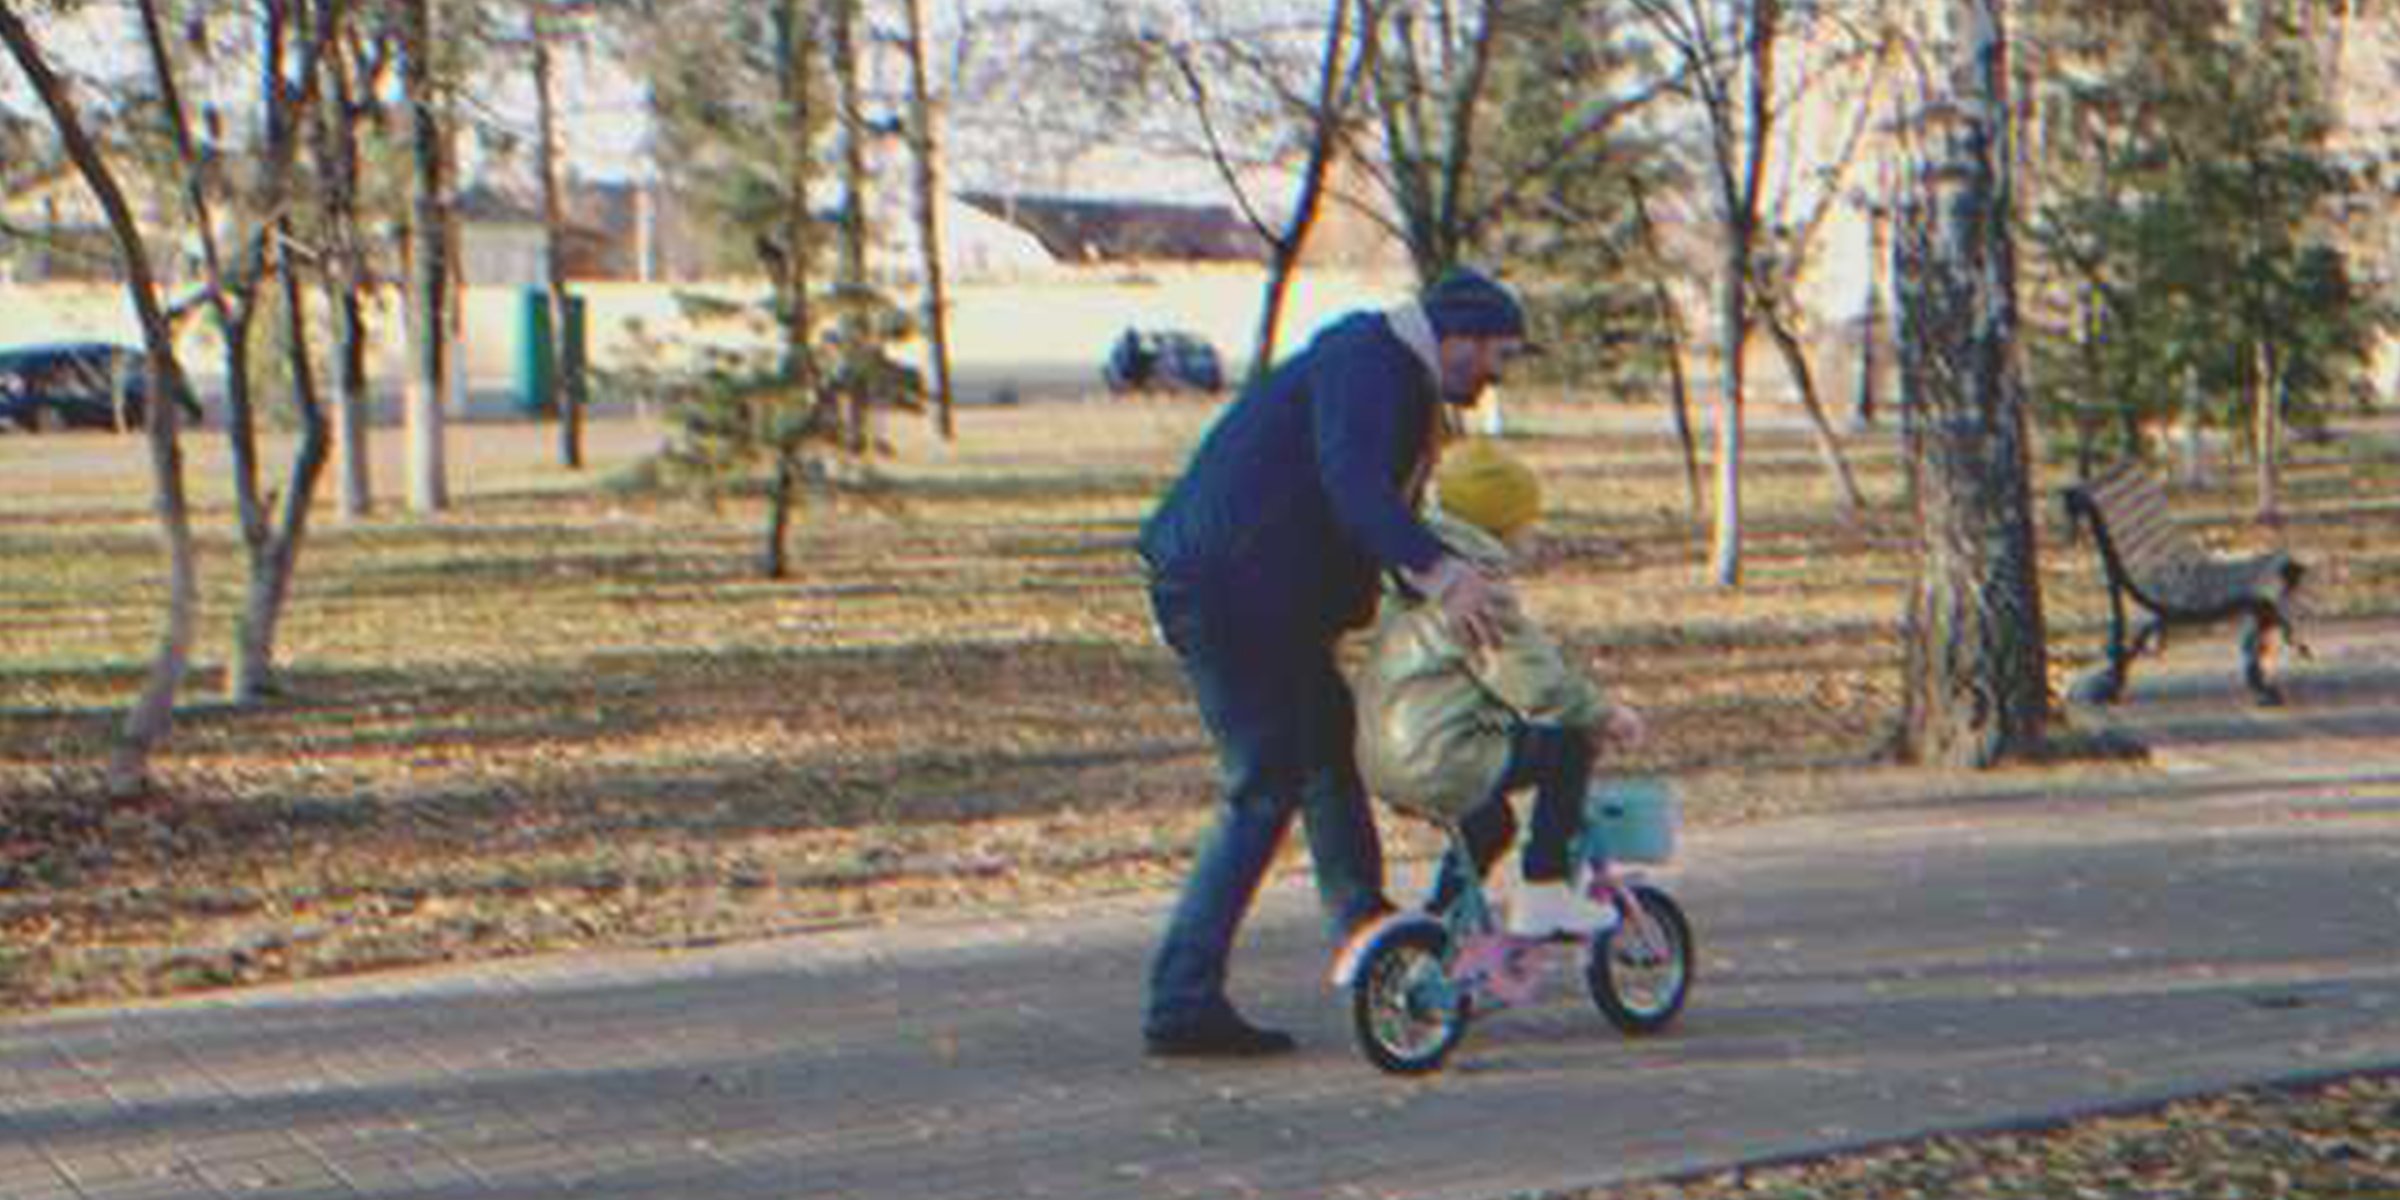 Ein Mann und ein Kind auf einem Fahrrad. | Quelle: Shutterstock